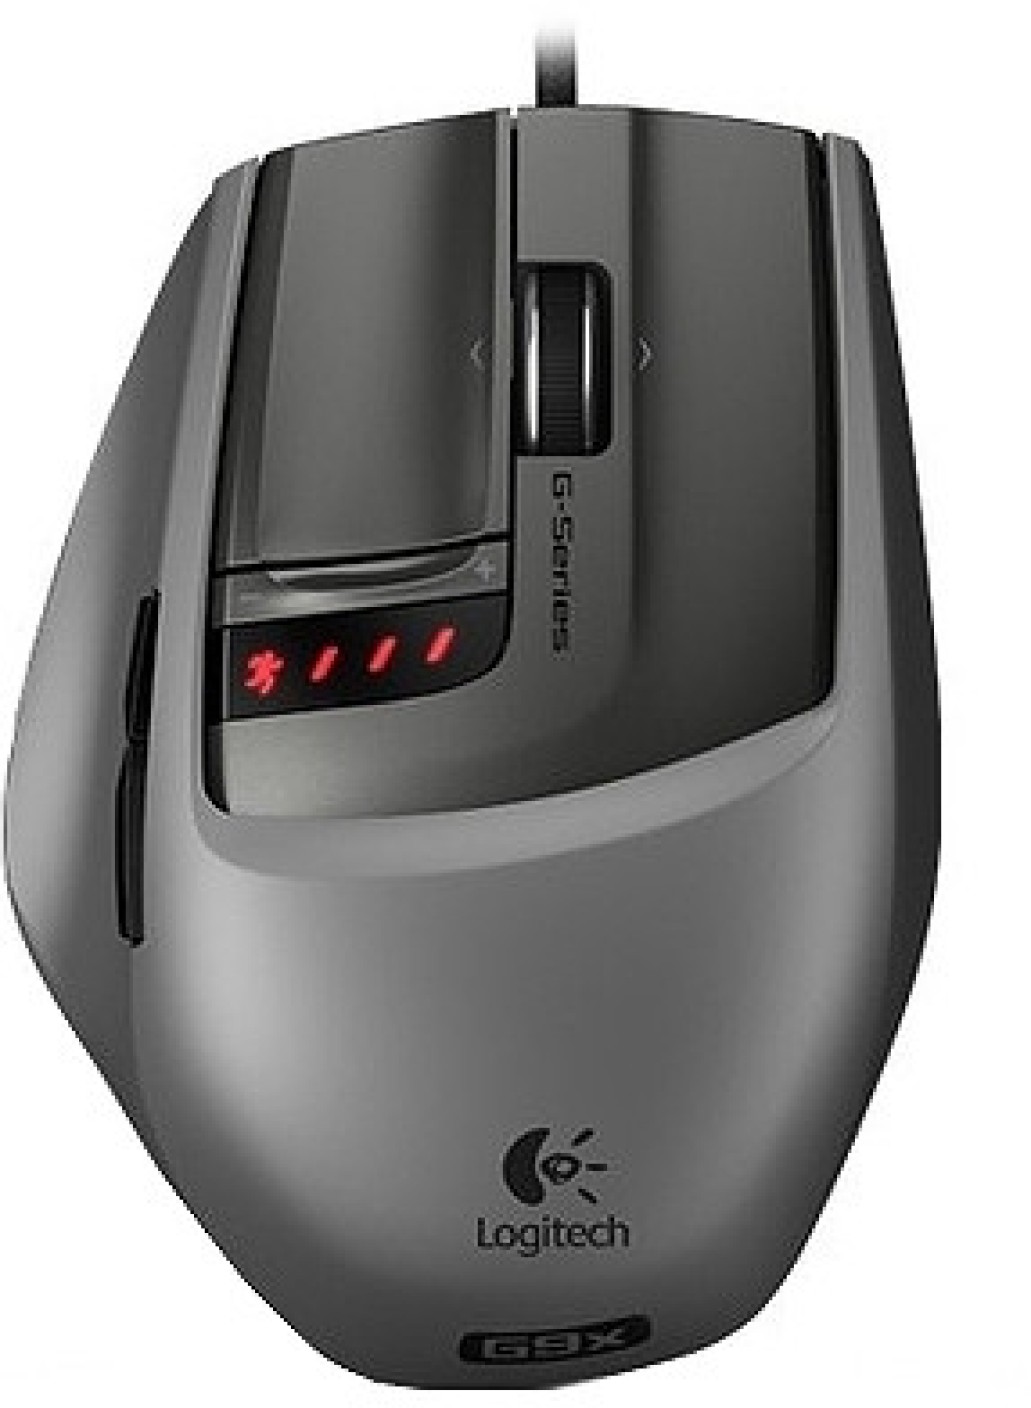 logitech g9x laser mouse review